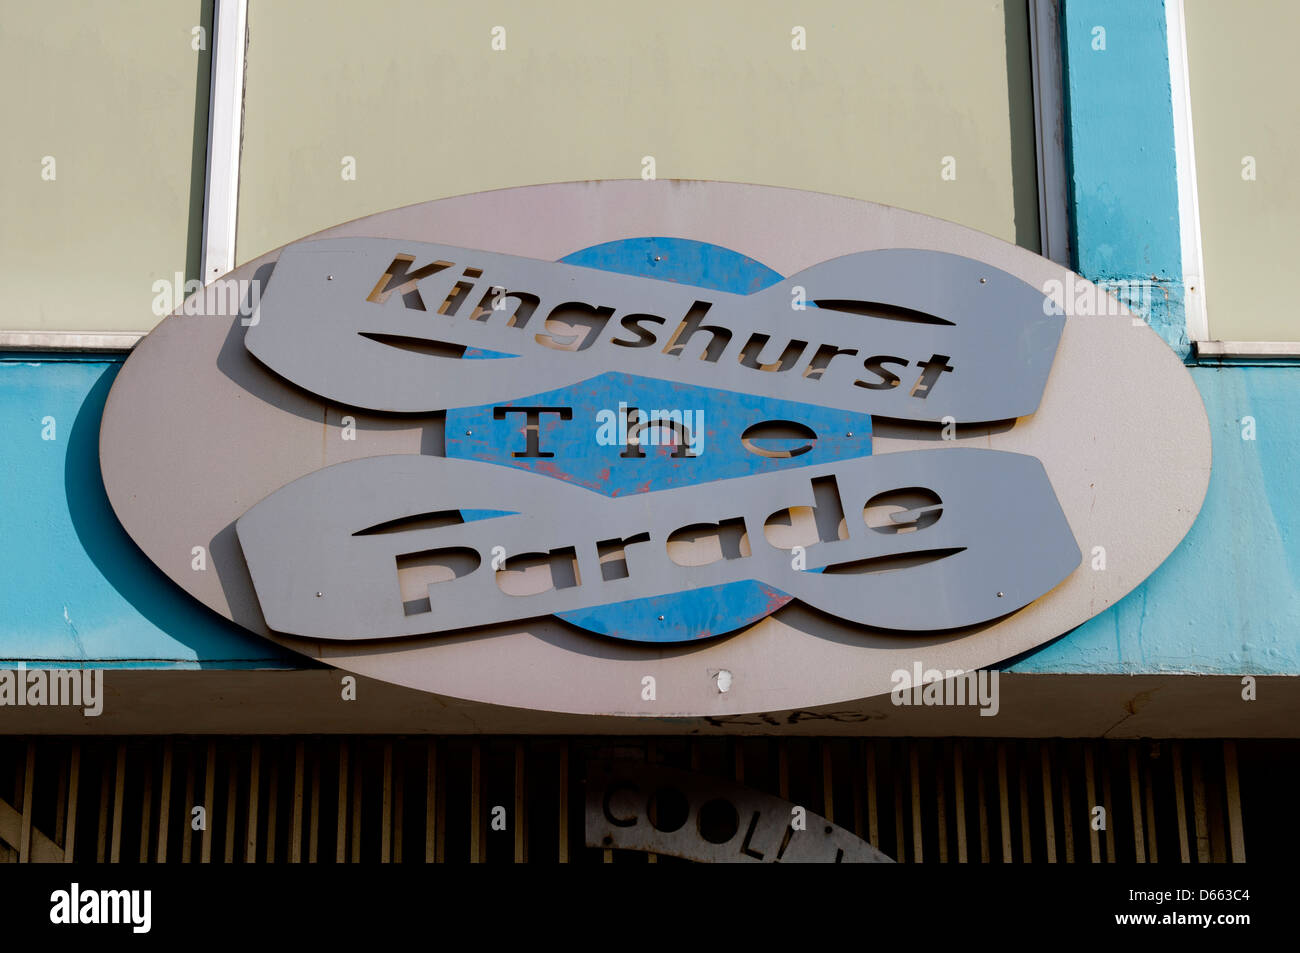 The Parade shopping precinct sign, Kingshurst, West Midlands, England, UK Stock Photo